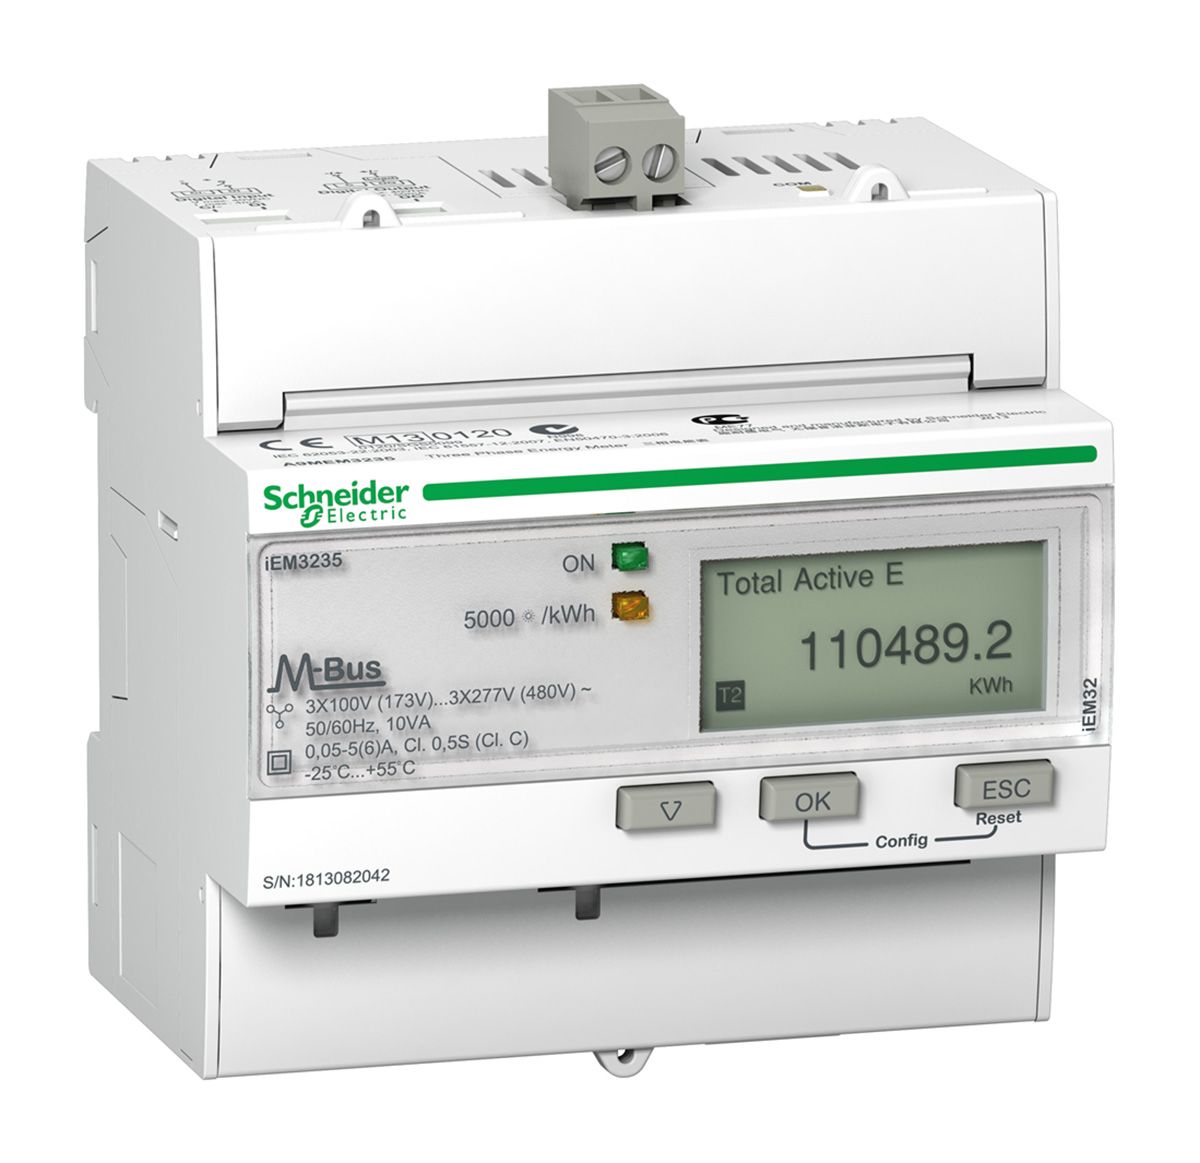 Schneider Electric Acti 9 iEM3000 Energiemessgerät LCD, 8-stellig / 3-phasig 0 → 99999999 MWh